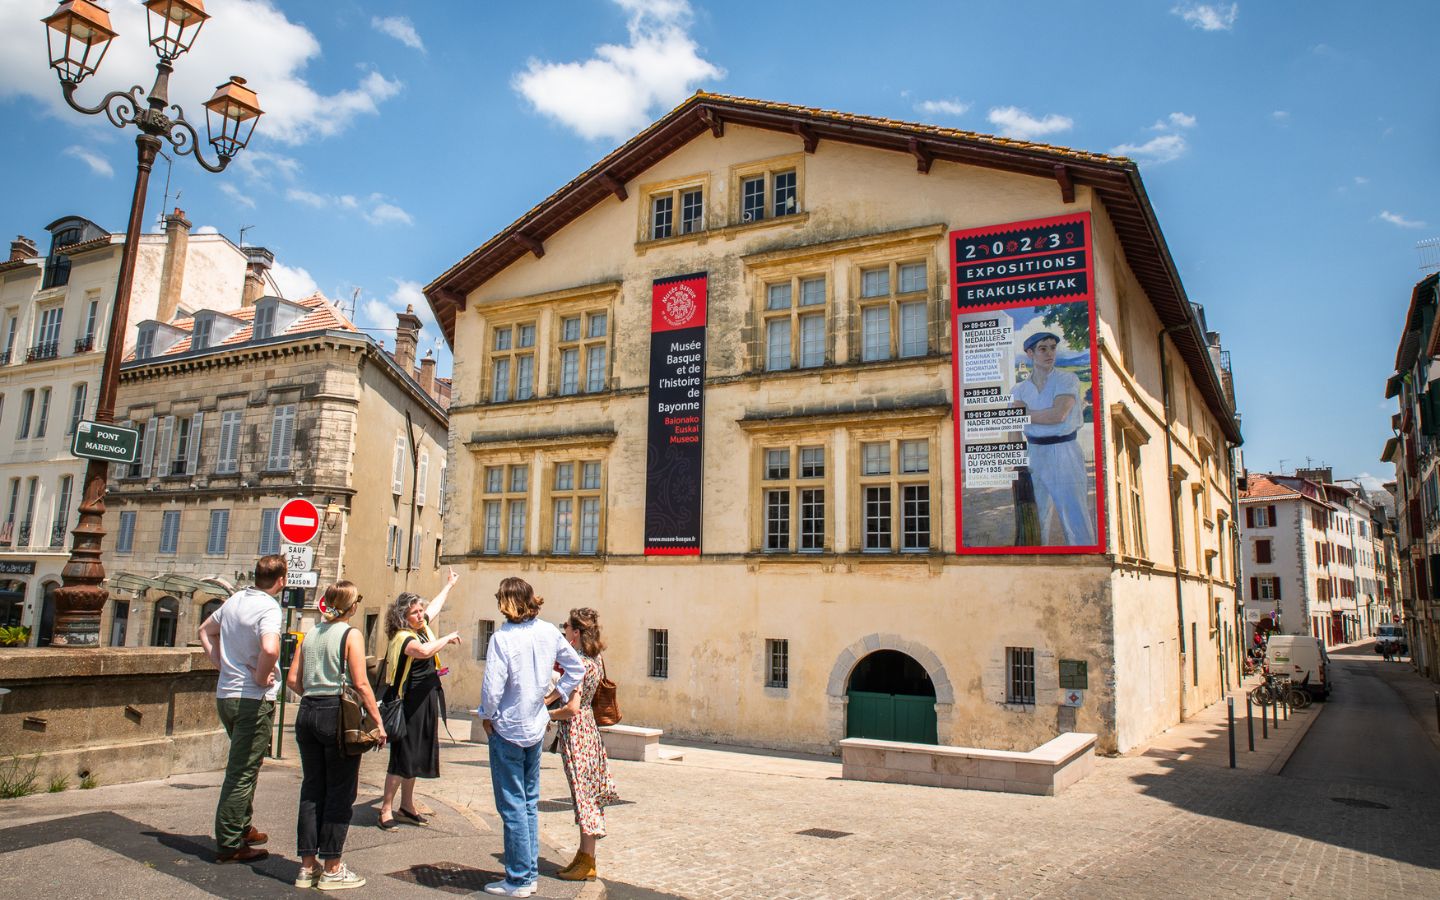 Musée Basque et de l'Histoire de Bayonne